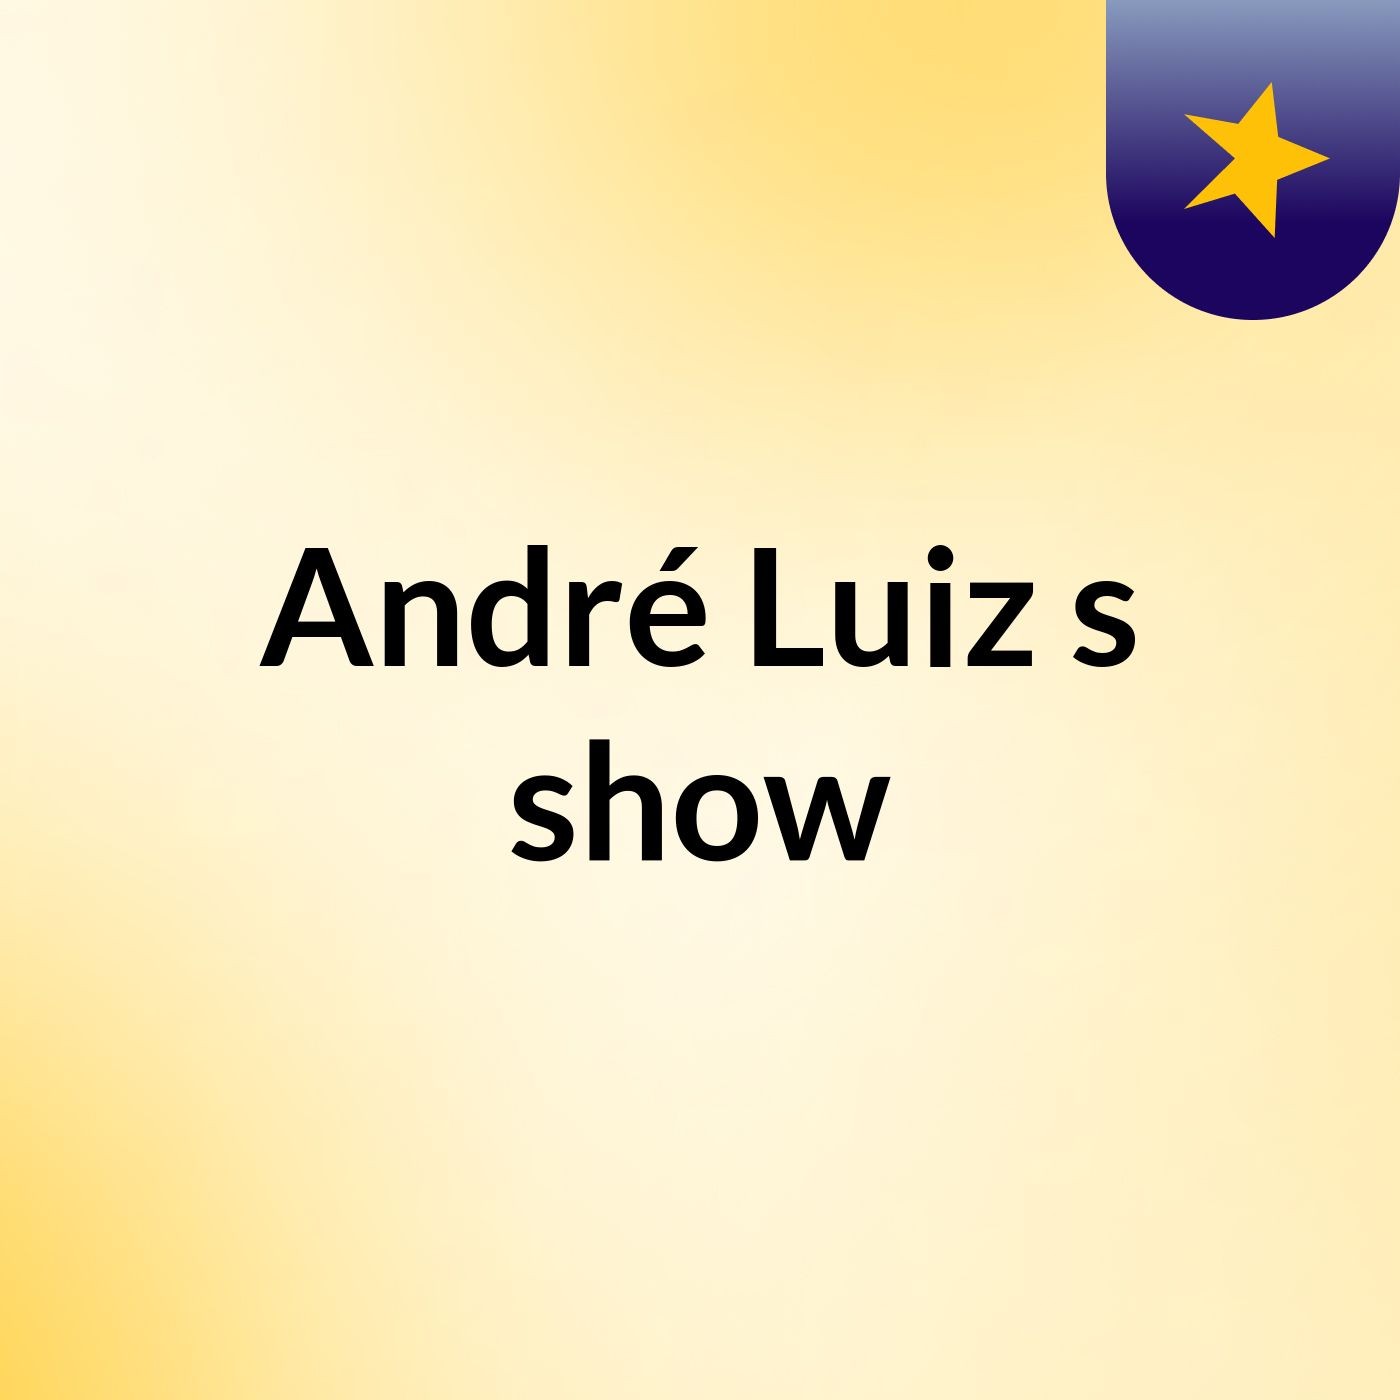 André Luiz's show